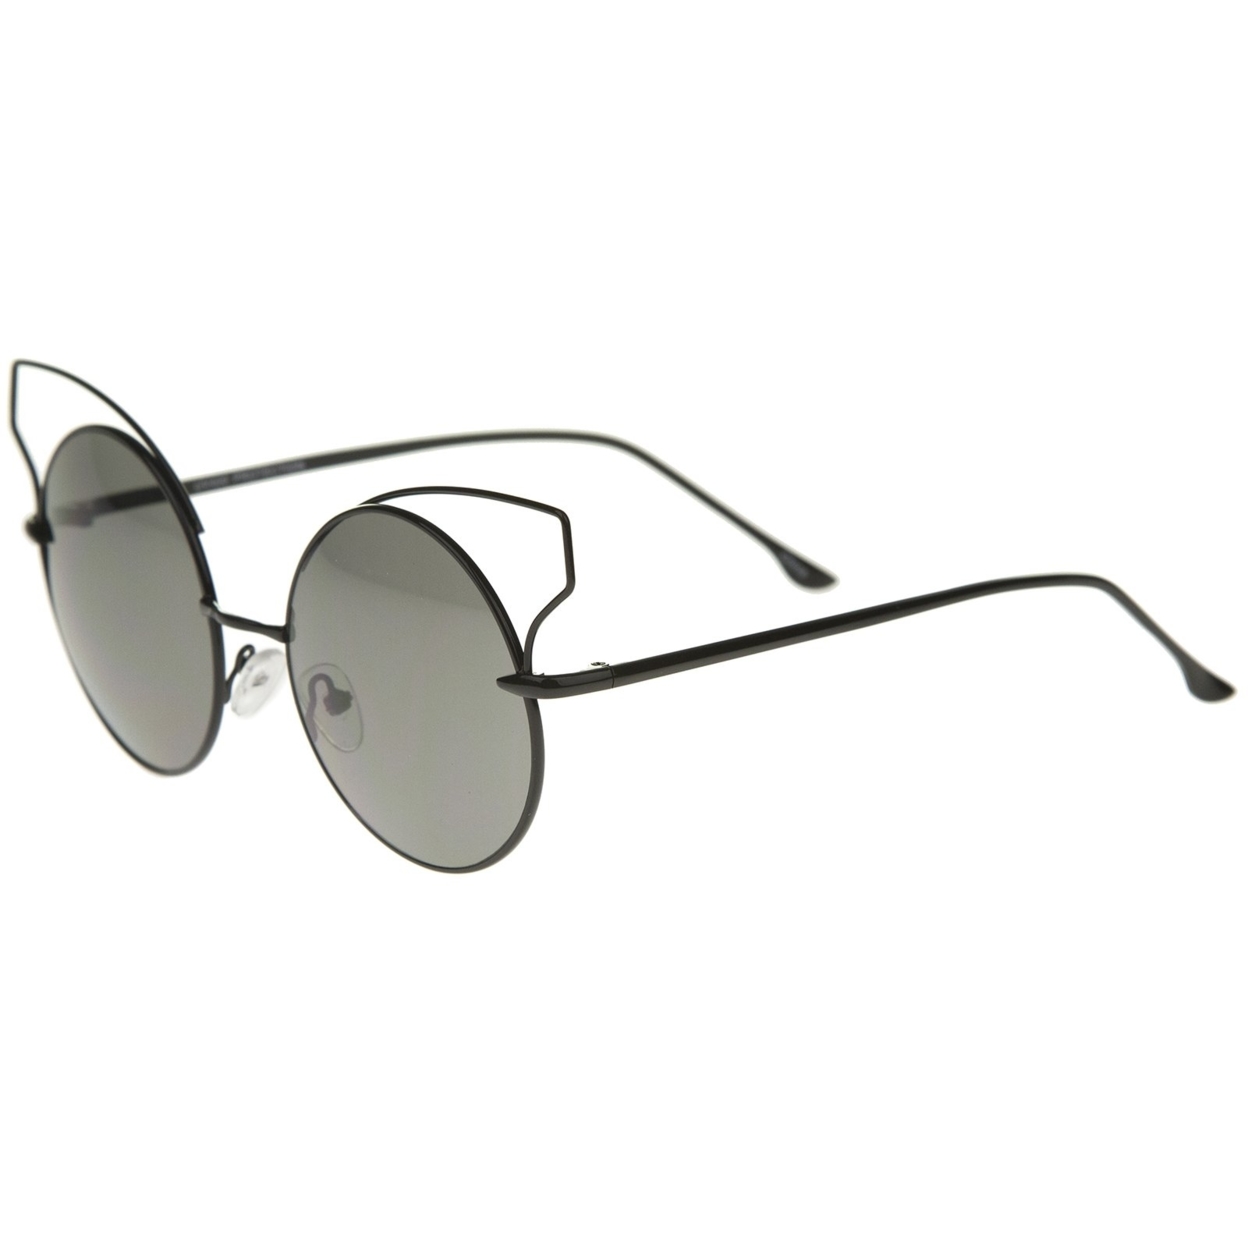 Women's Full Metal Open Design Frame Round Cat Eye Sunglasses 55mm - Black / Smoke